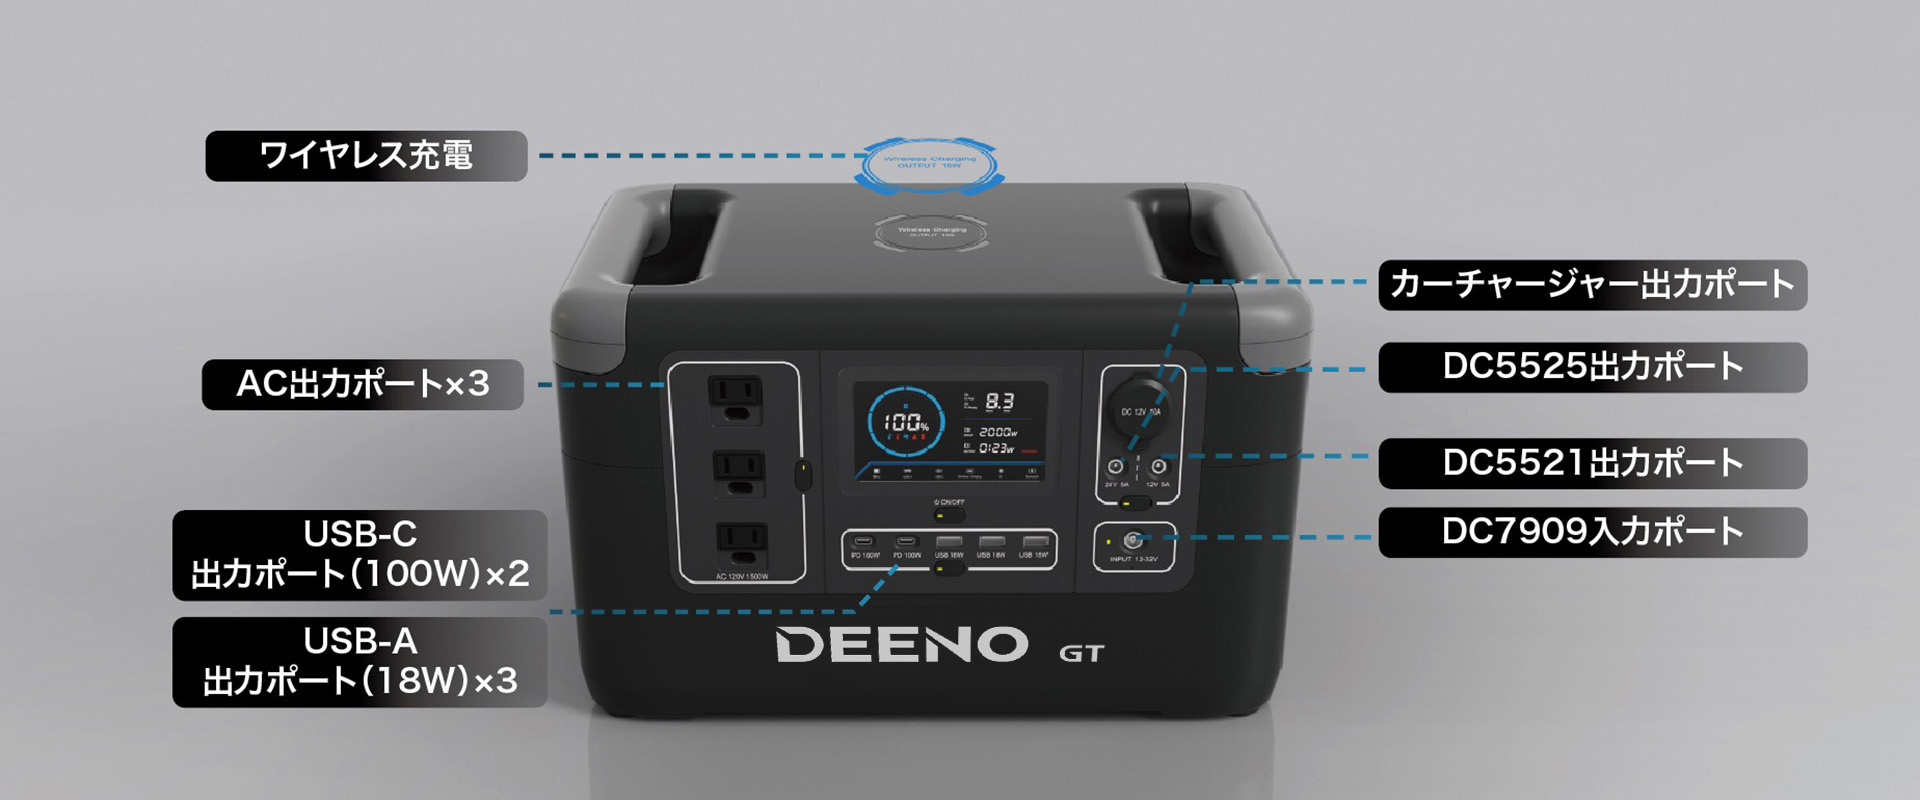 店内全品対象 ADTEC アドテック DEENO X1500 ディーノ ポータブル電源 ポタ電 パワーステーション 2年間保証 PS151032 